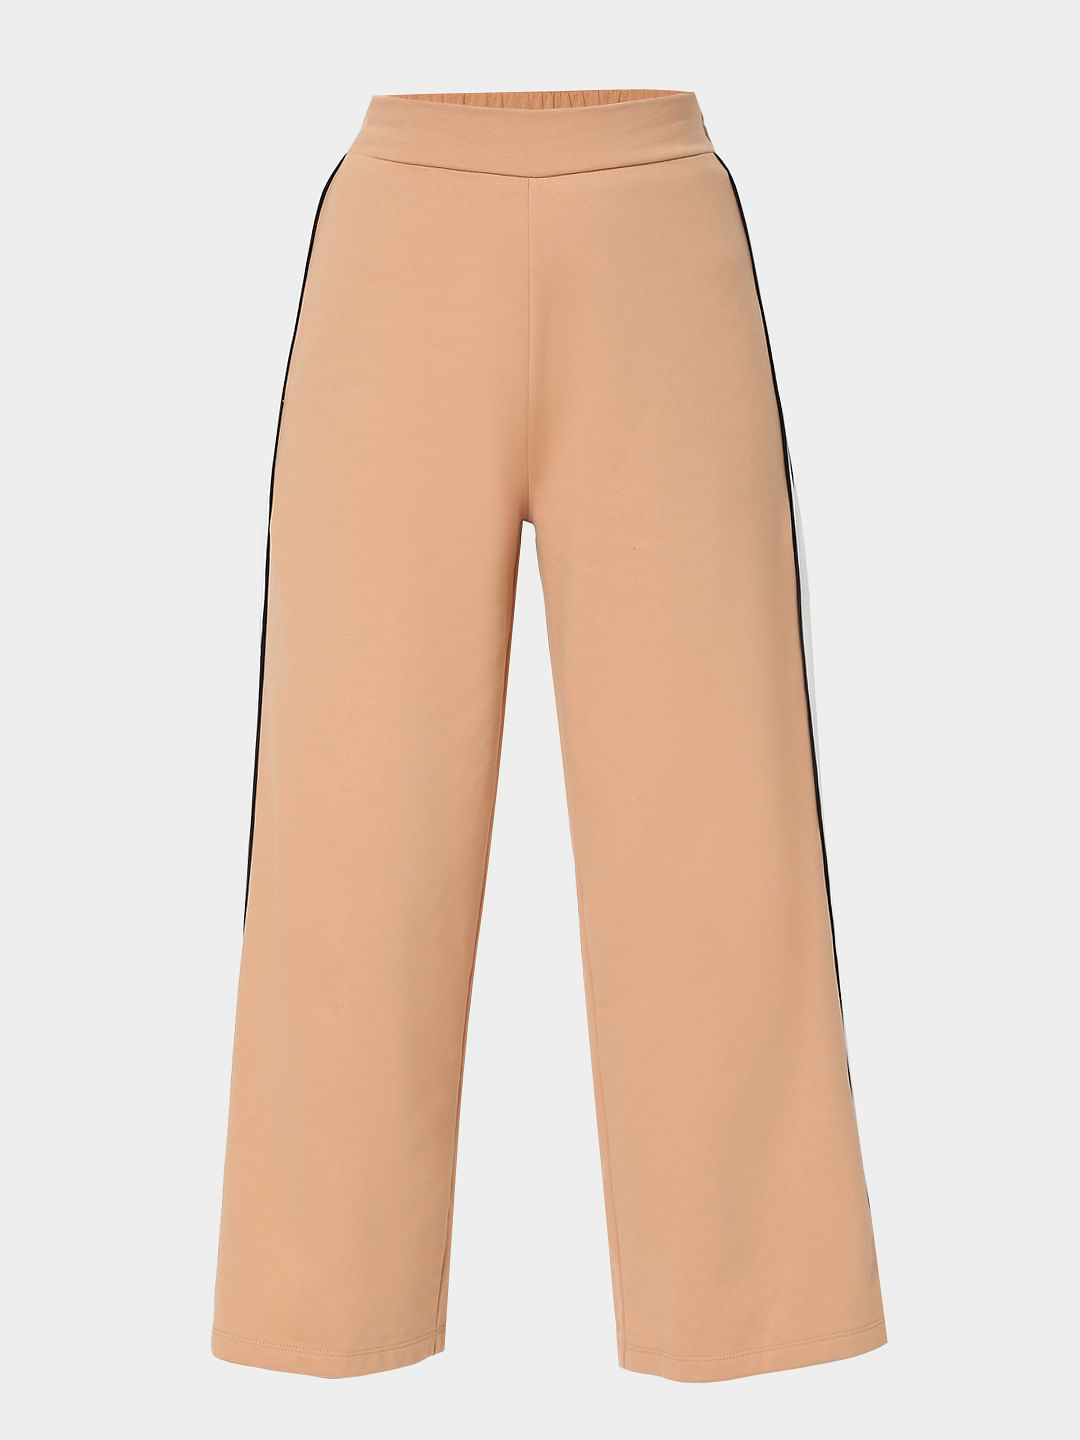 Pants | Buy Pants Online - CUE